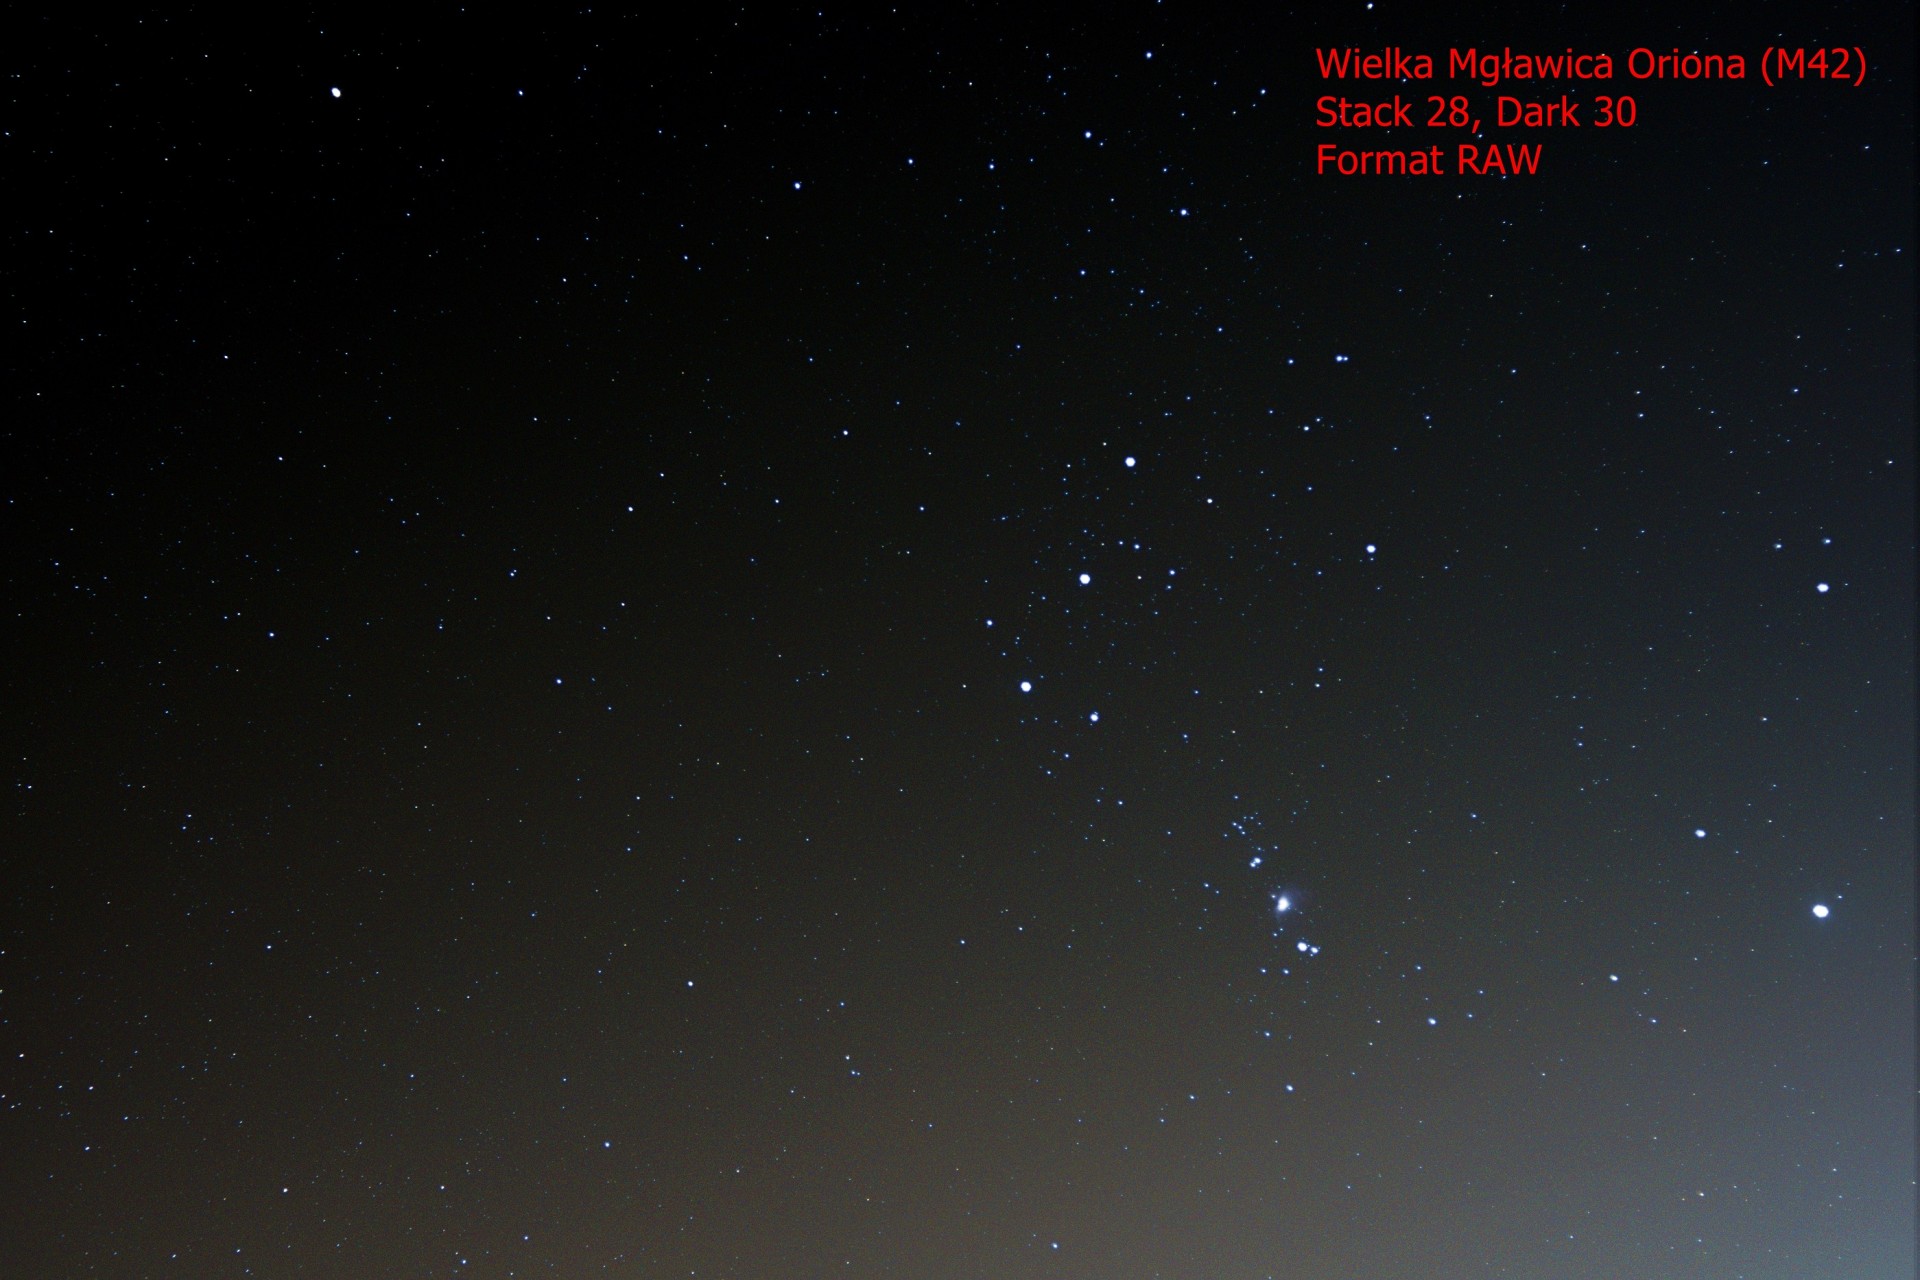 Zdjęcie Wielkiej Mgławicy Oriona (M42) uzyskane metodą stackowania